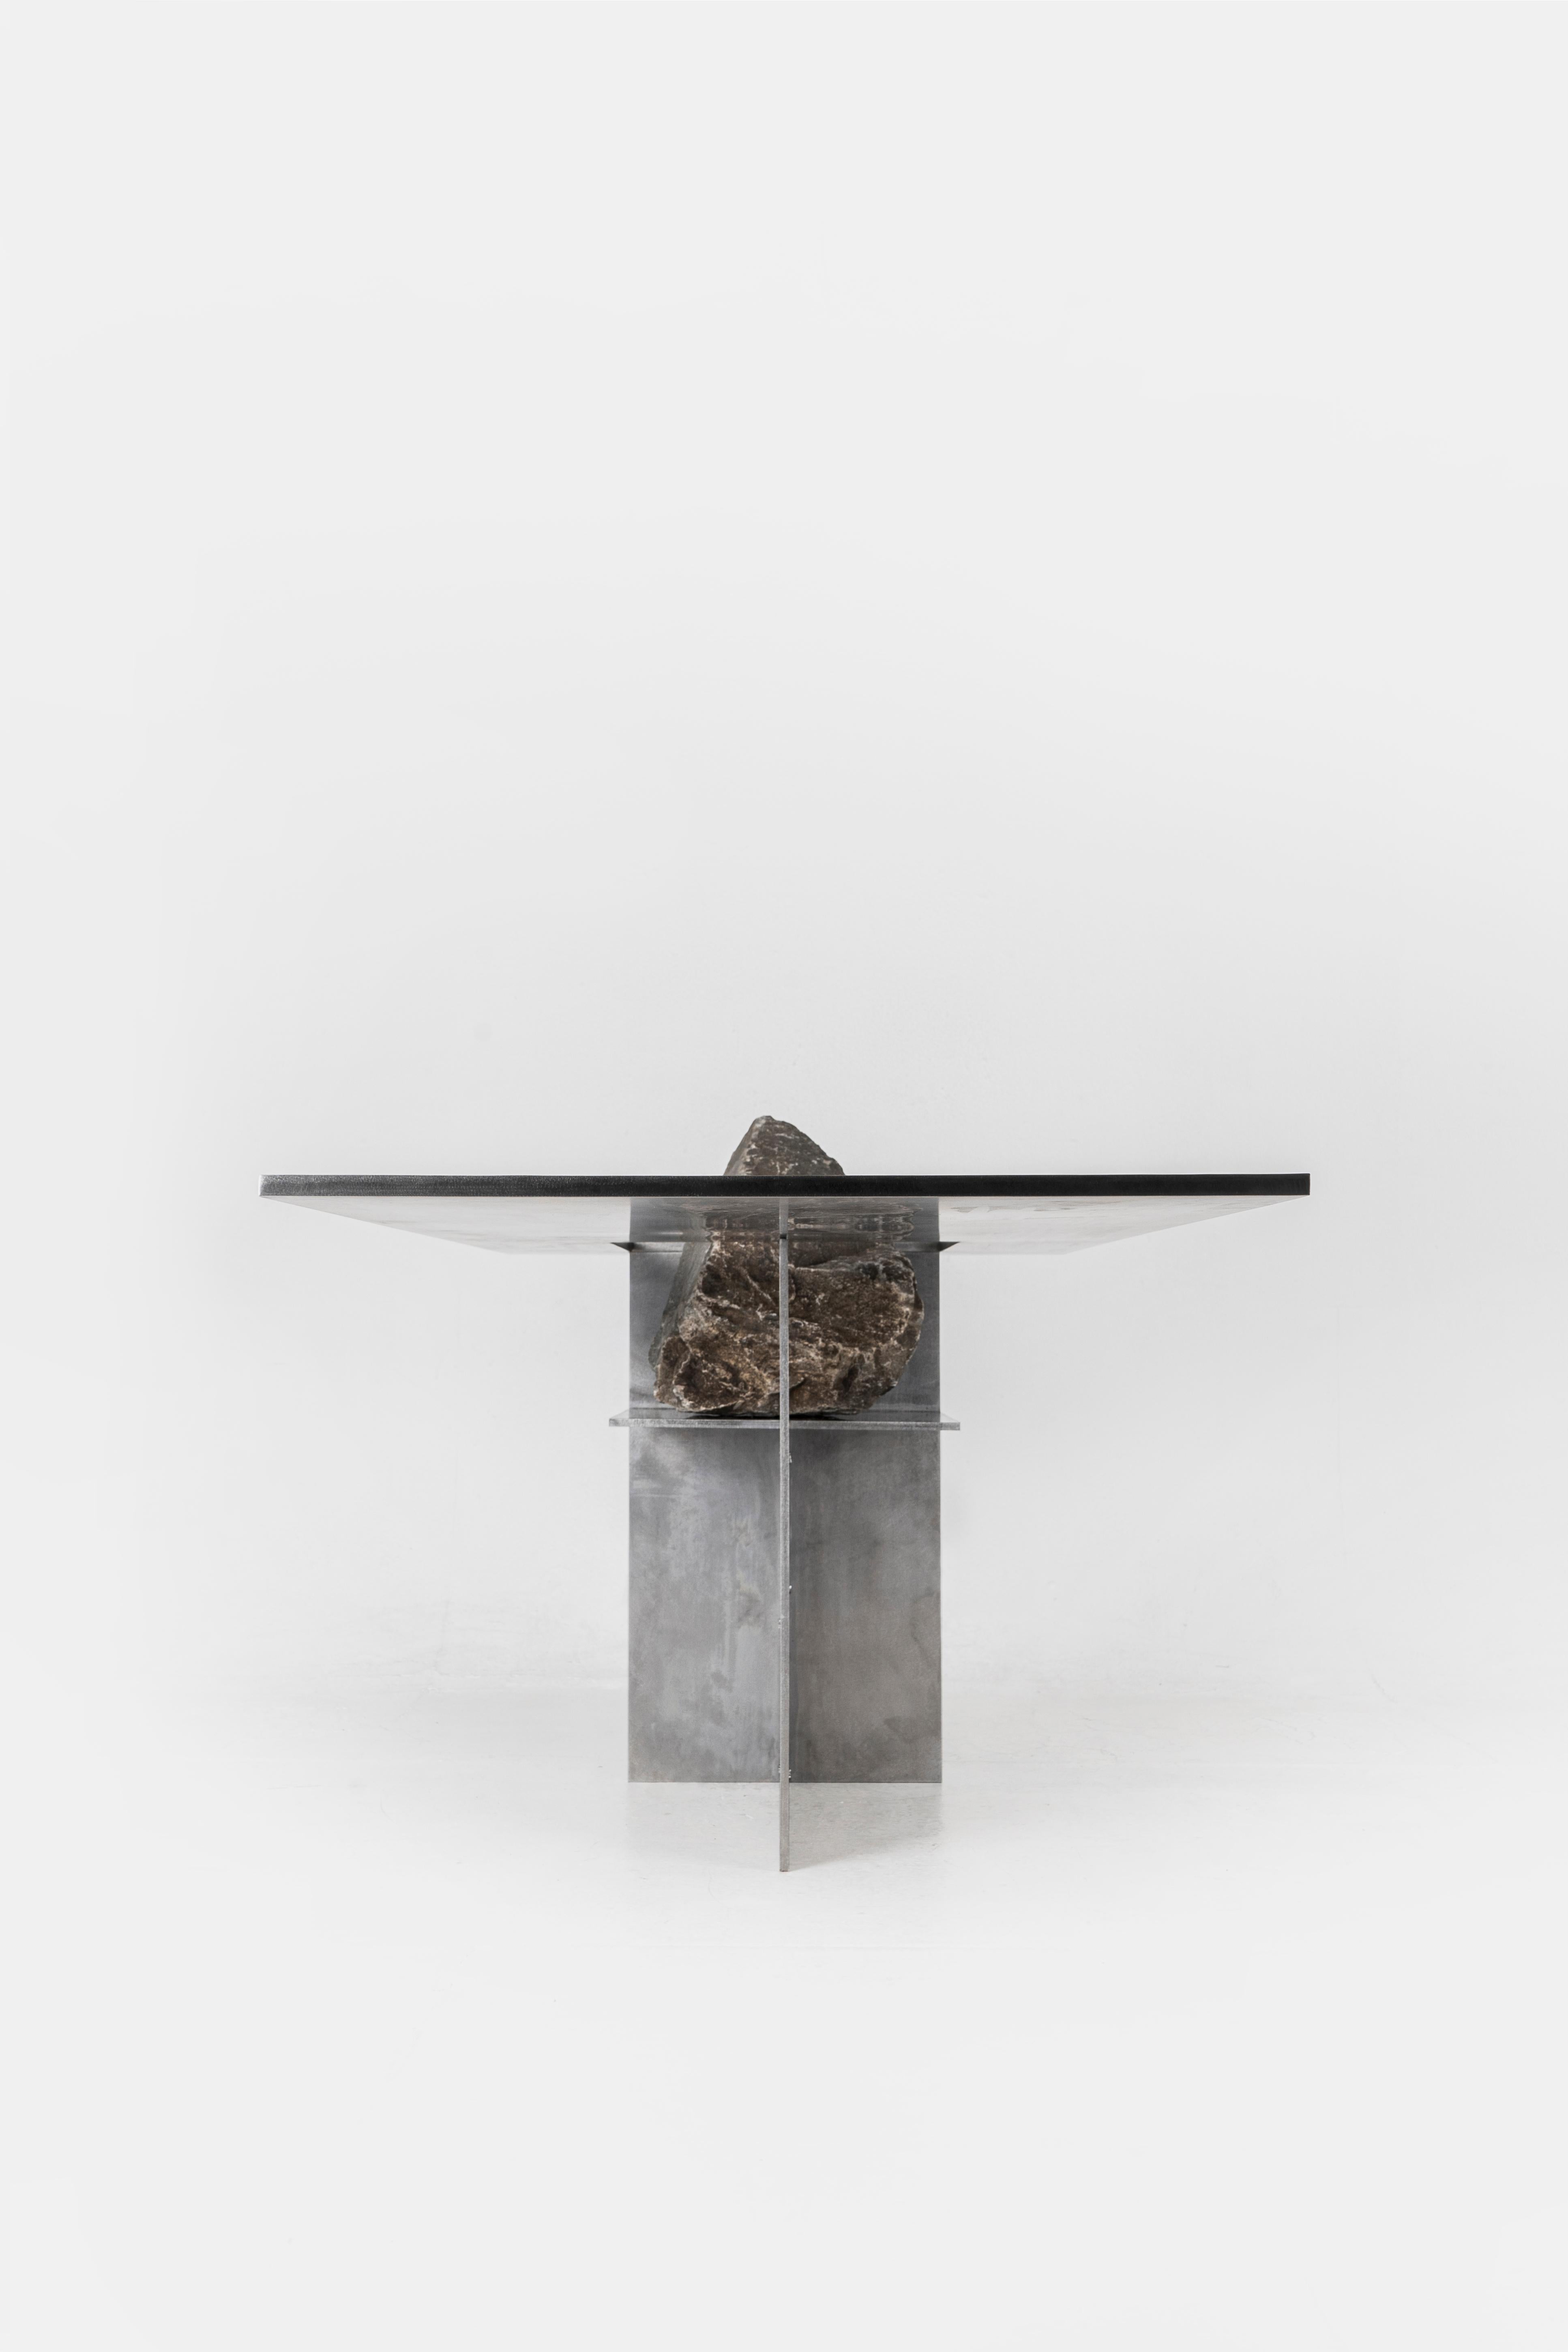 Proportions de la table en pierre par Lee Sisan
2019
Dimensions : L 140 x D 60 x H 55 cm
MATERIAL : Acier inoxydable, pierre naturelle

Chaque pièce est fabriquée sur commande et utilise des pierres naturelles, il faut donc s'attendre à une certaine